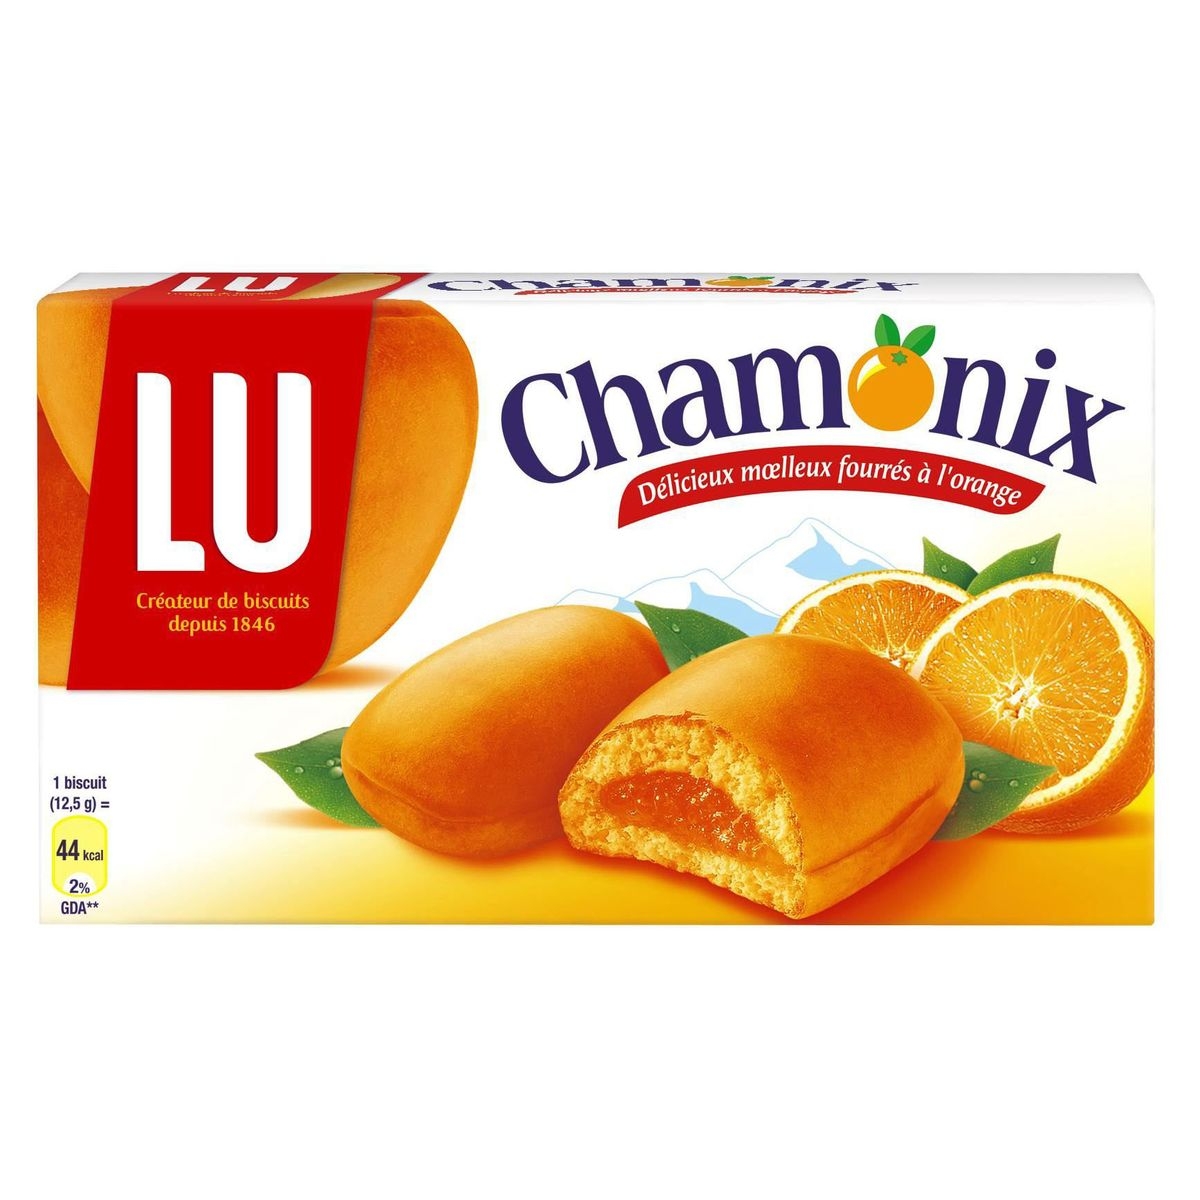 Chamonix biscuit à la pulpe d’orange – Chamonix cakes with orange marmelade filling – LU, 250g – Chanteroy – Le Vacherin Deli